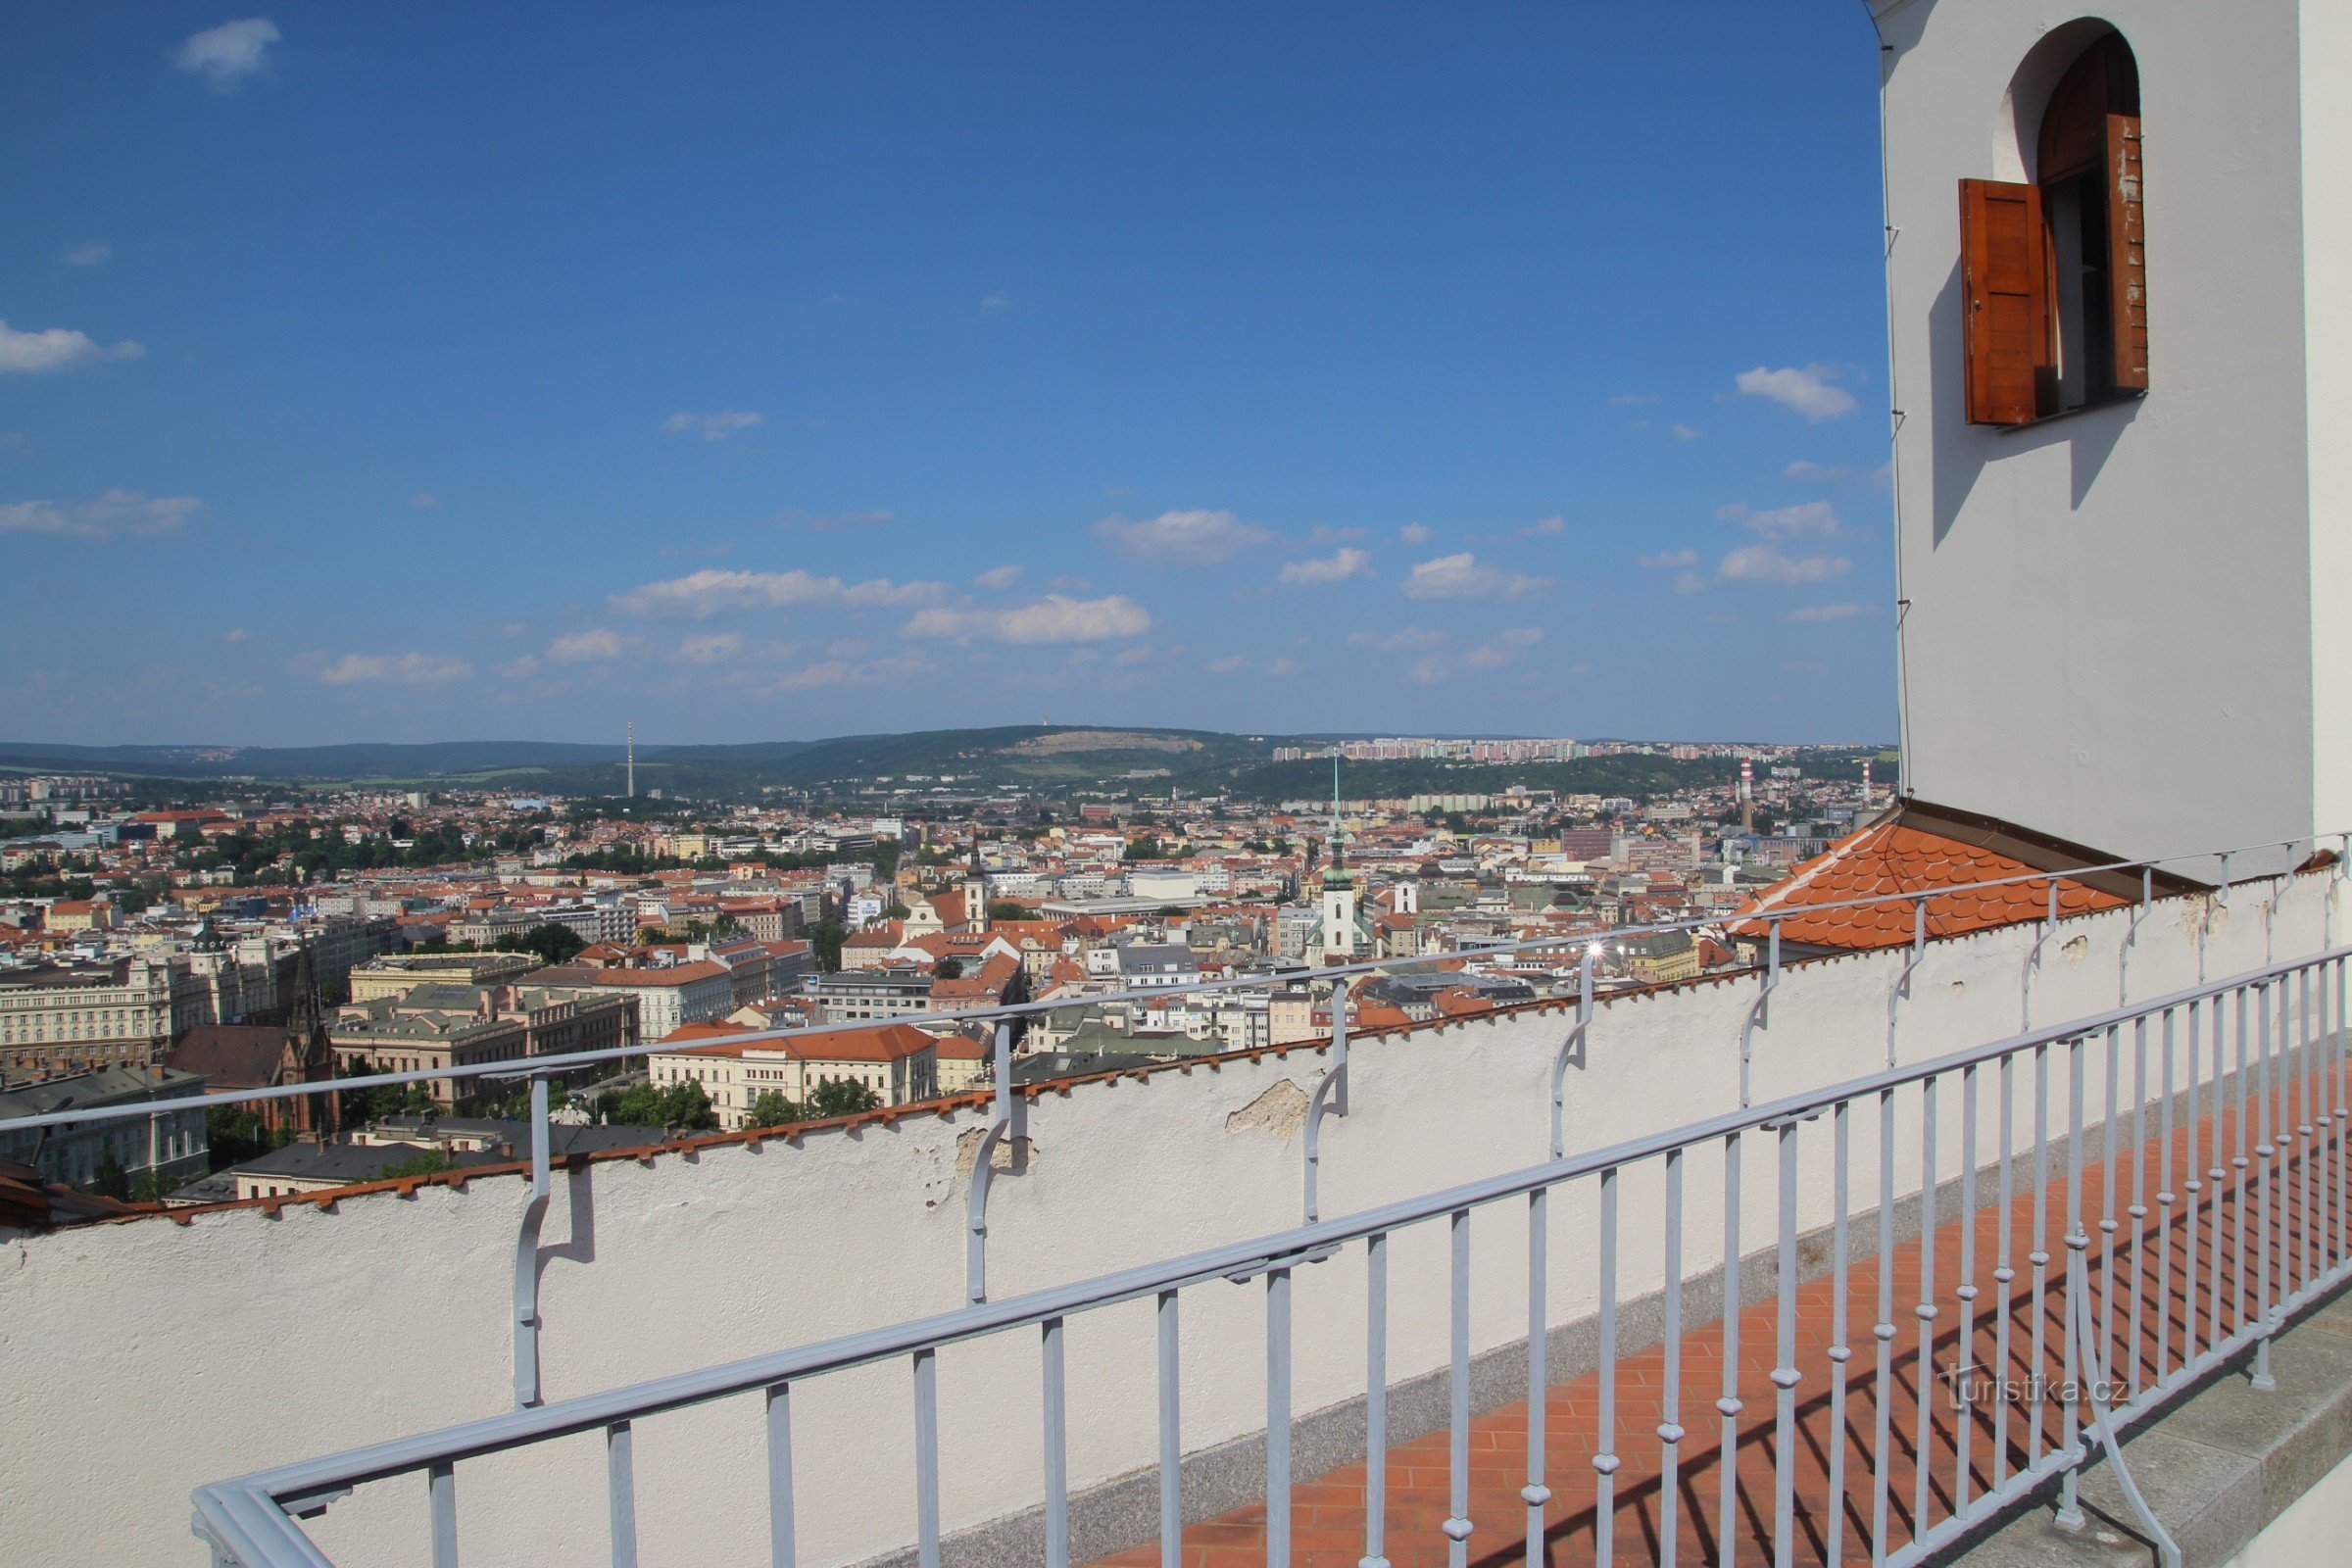 Kilátás Brno városára a kilátó teraszról